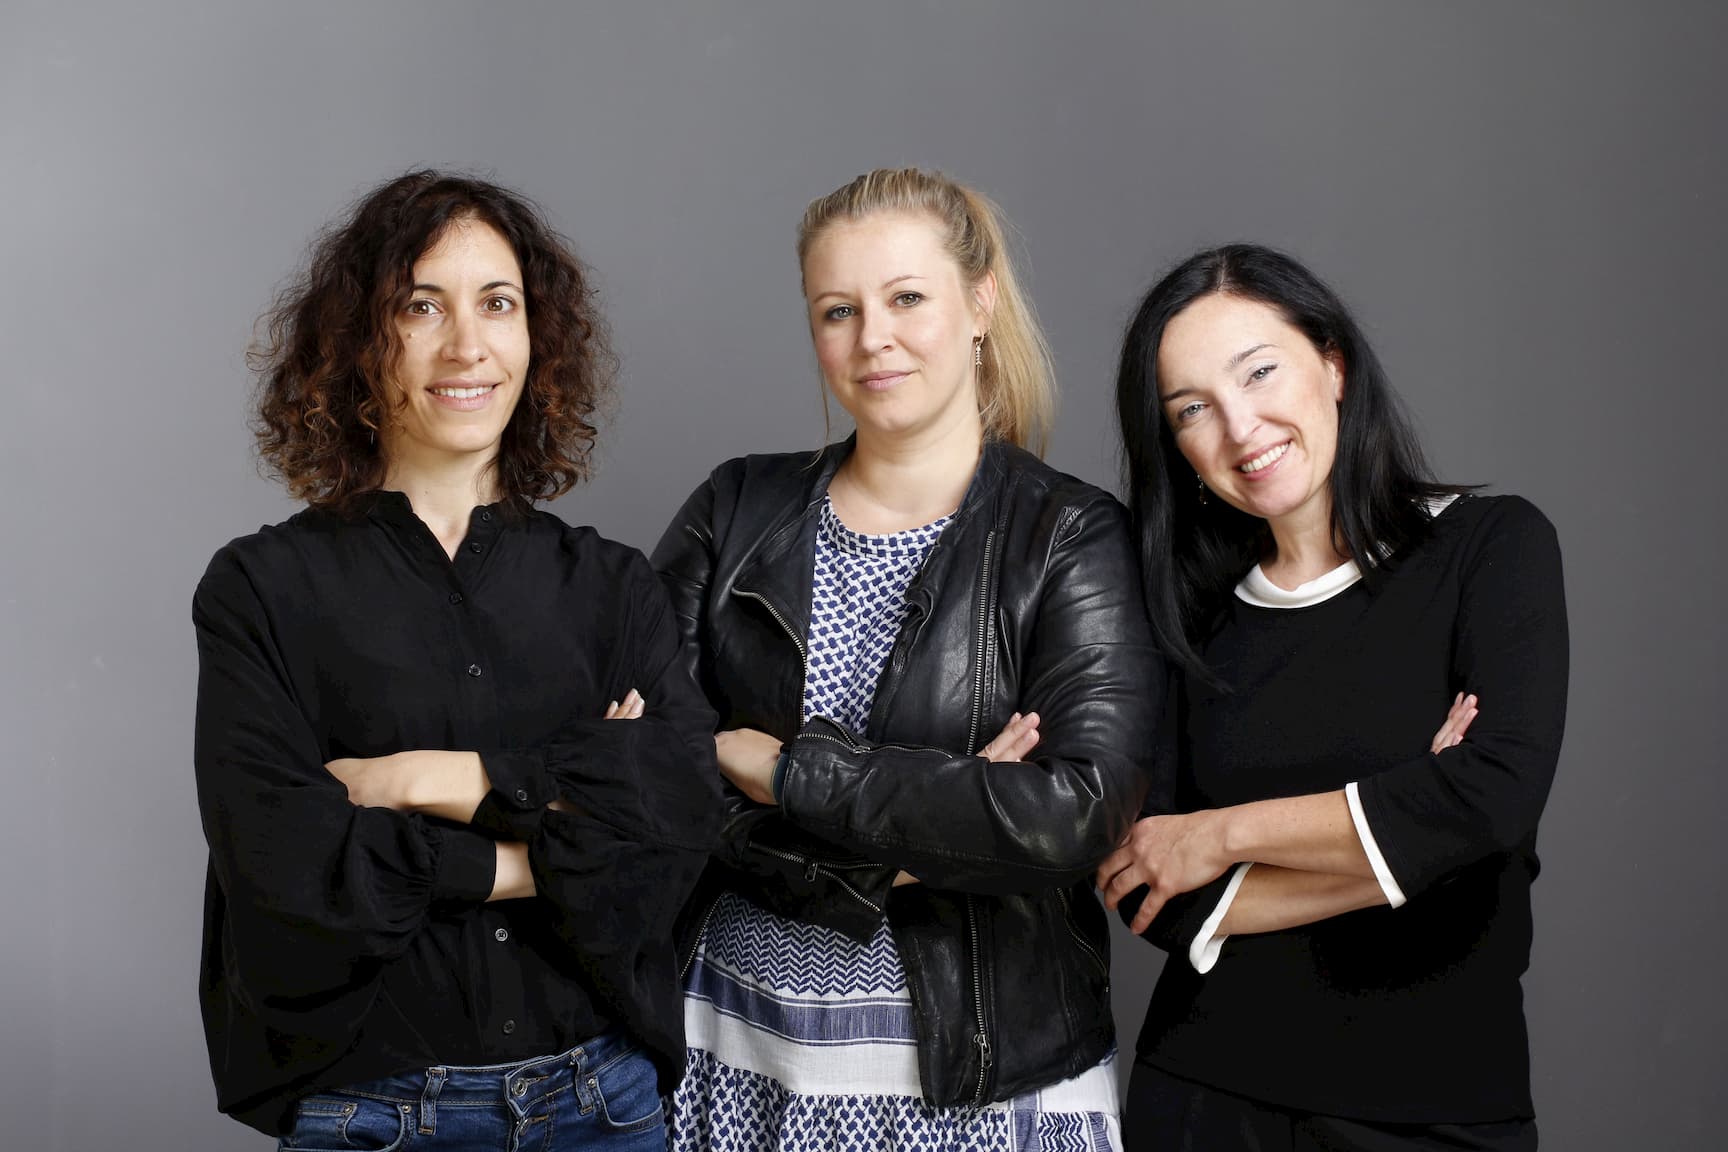 Weibliche Führungskräfte von ucm.agency - Inbal, Nadine & Anna